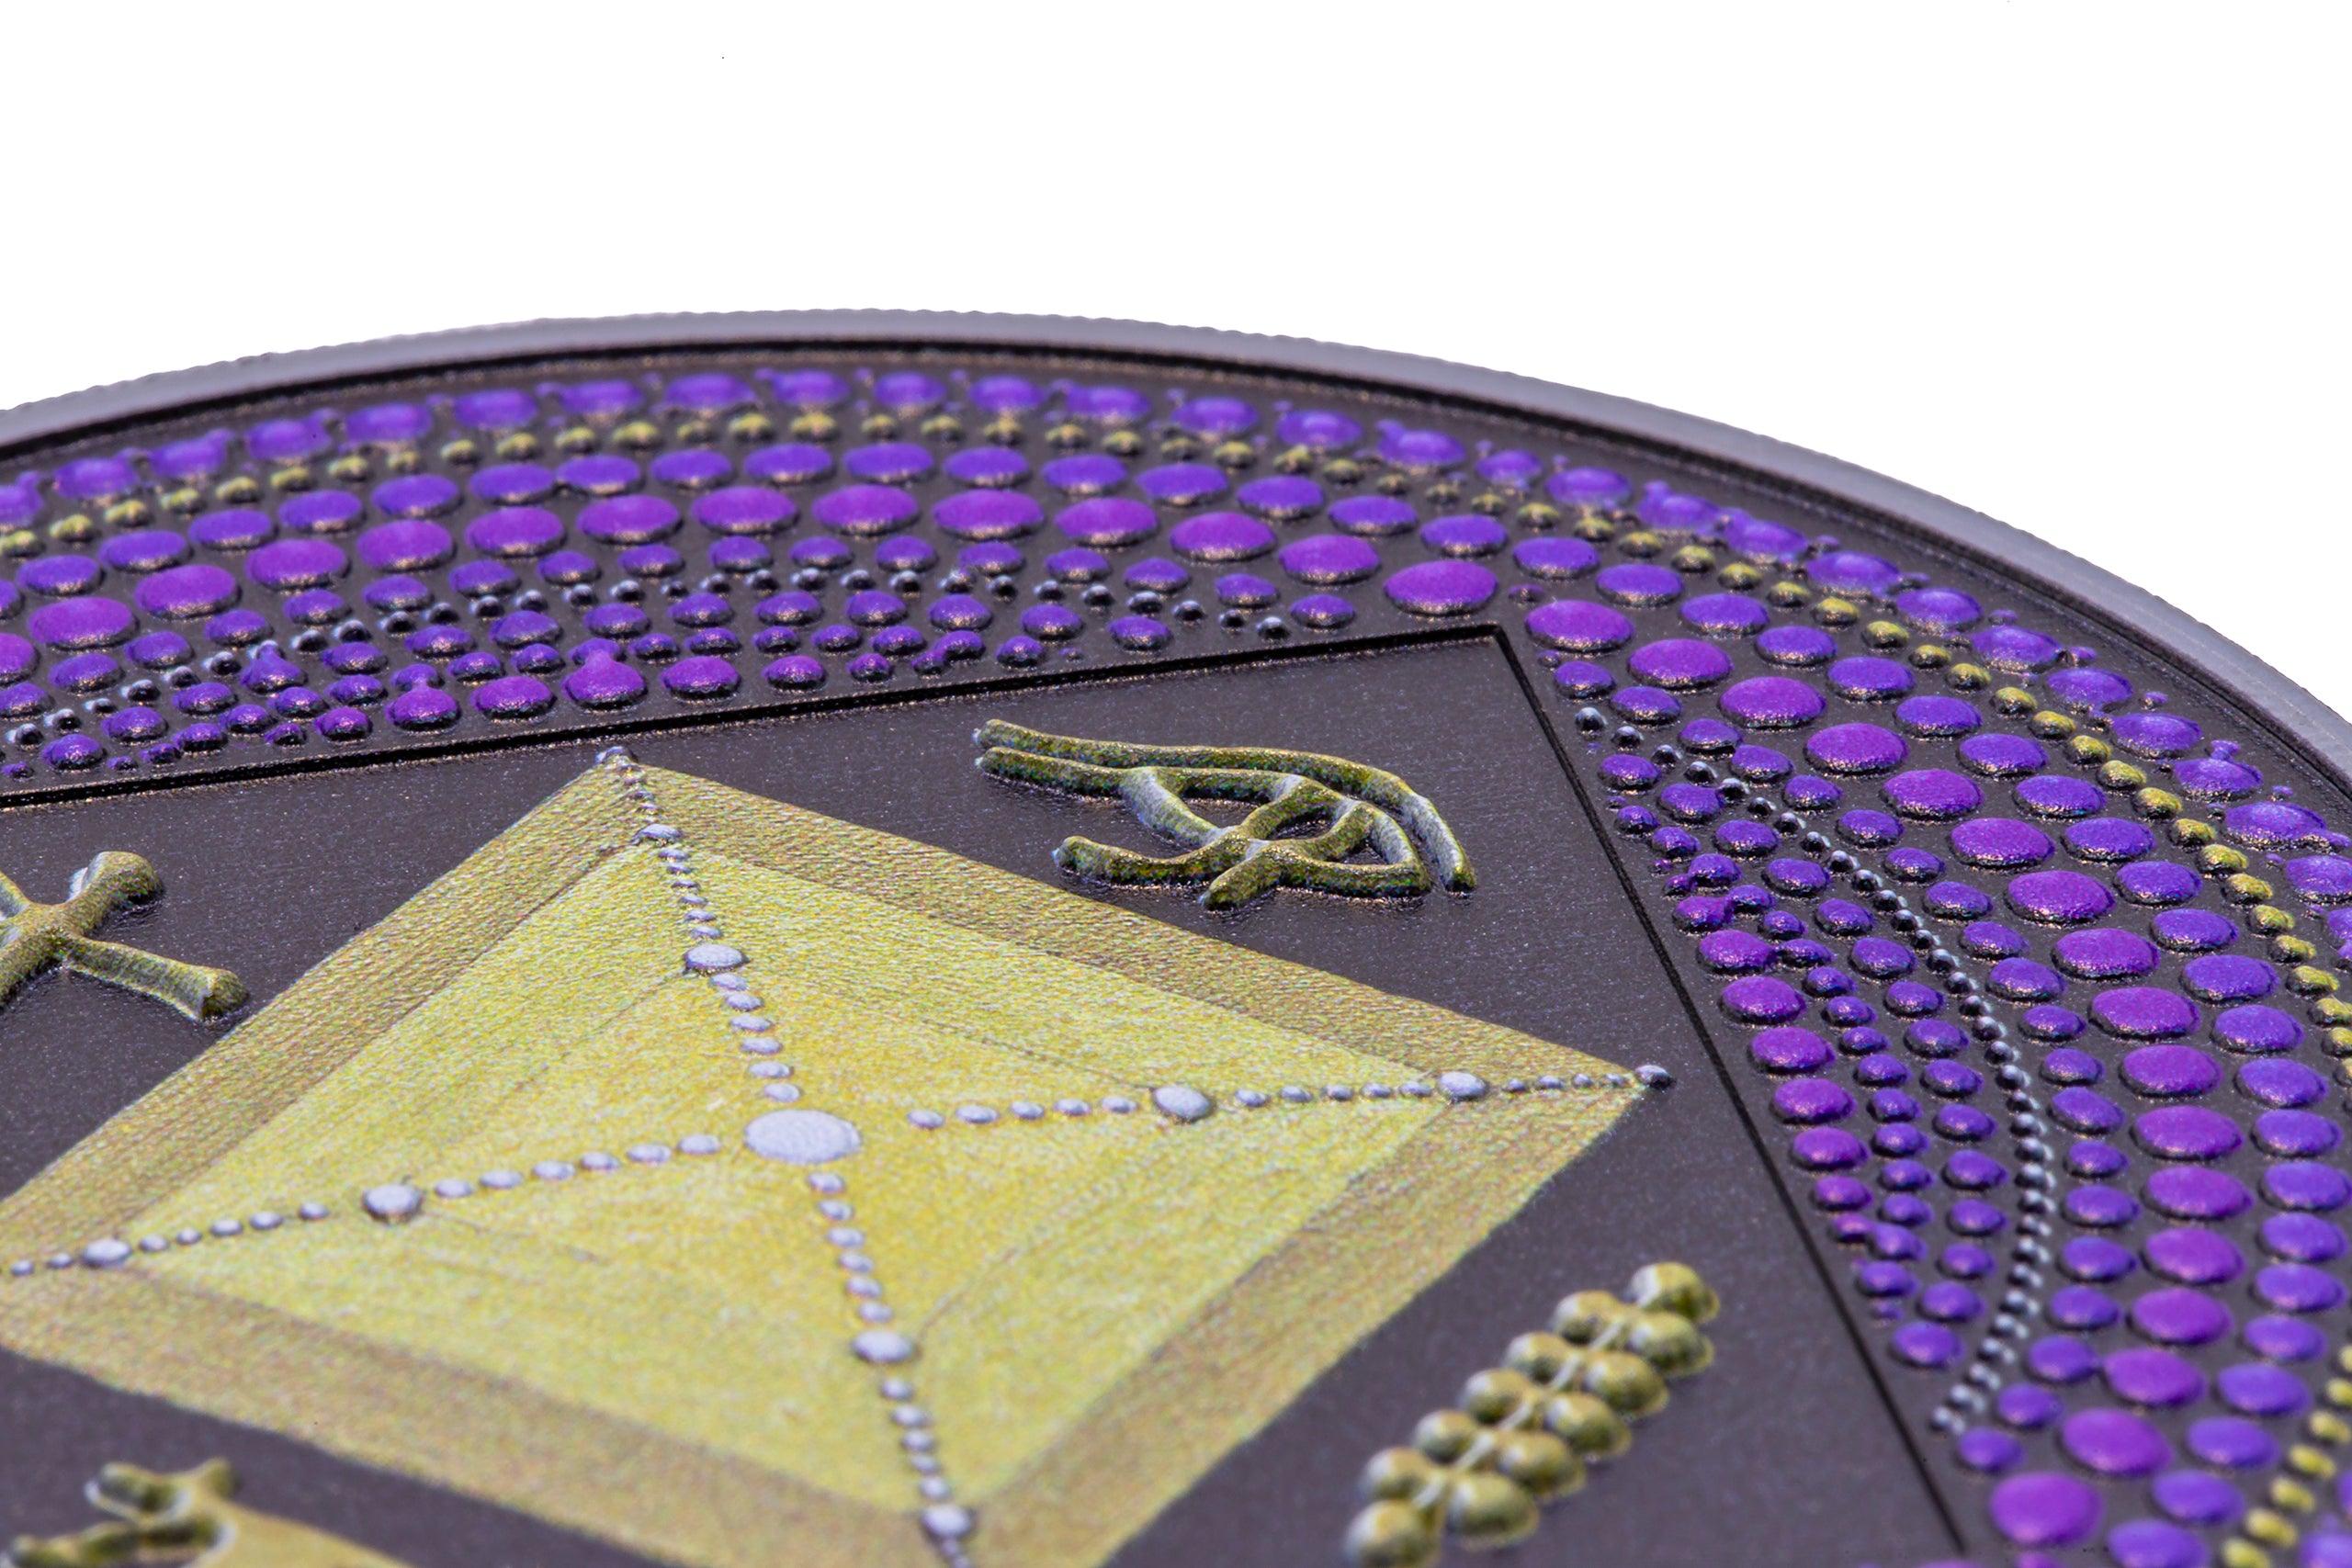 EGYPT PYRAMID Dot Art 3 Oz Silver Coin $20 Palau 2022 Collectible Coin